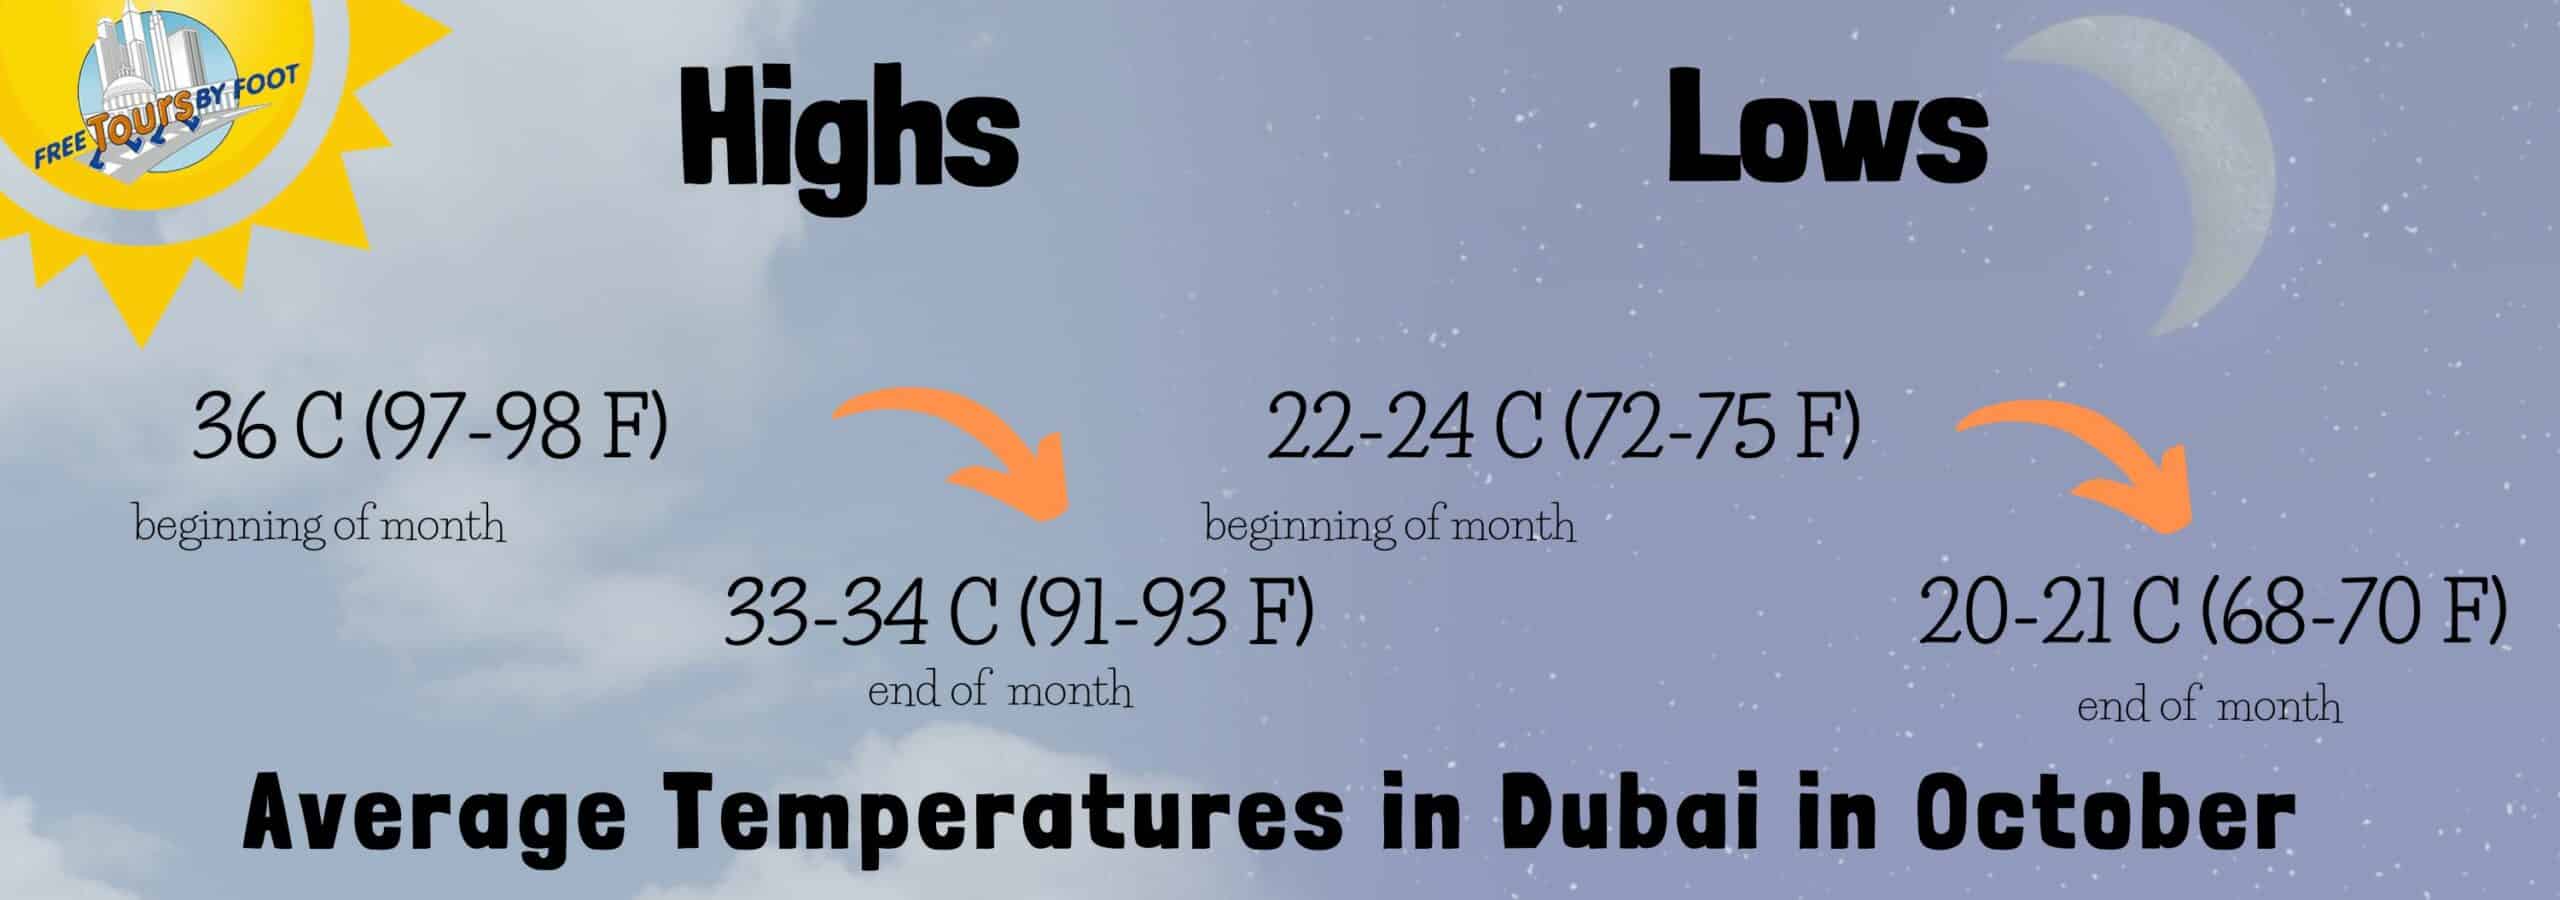 Temperatures in Dubai in October